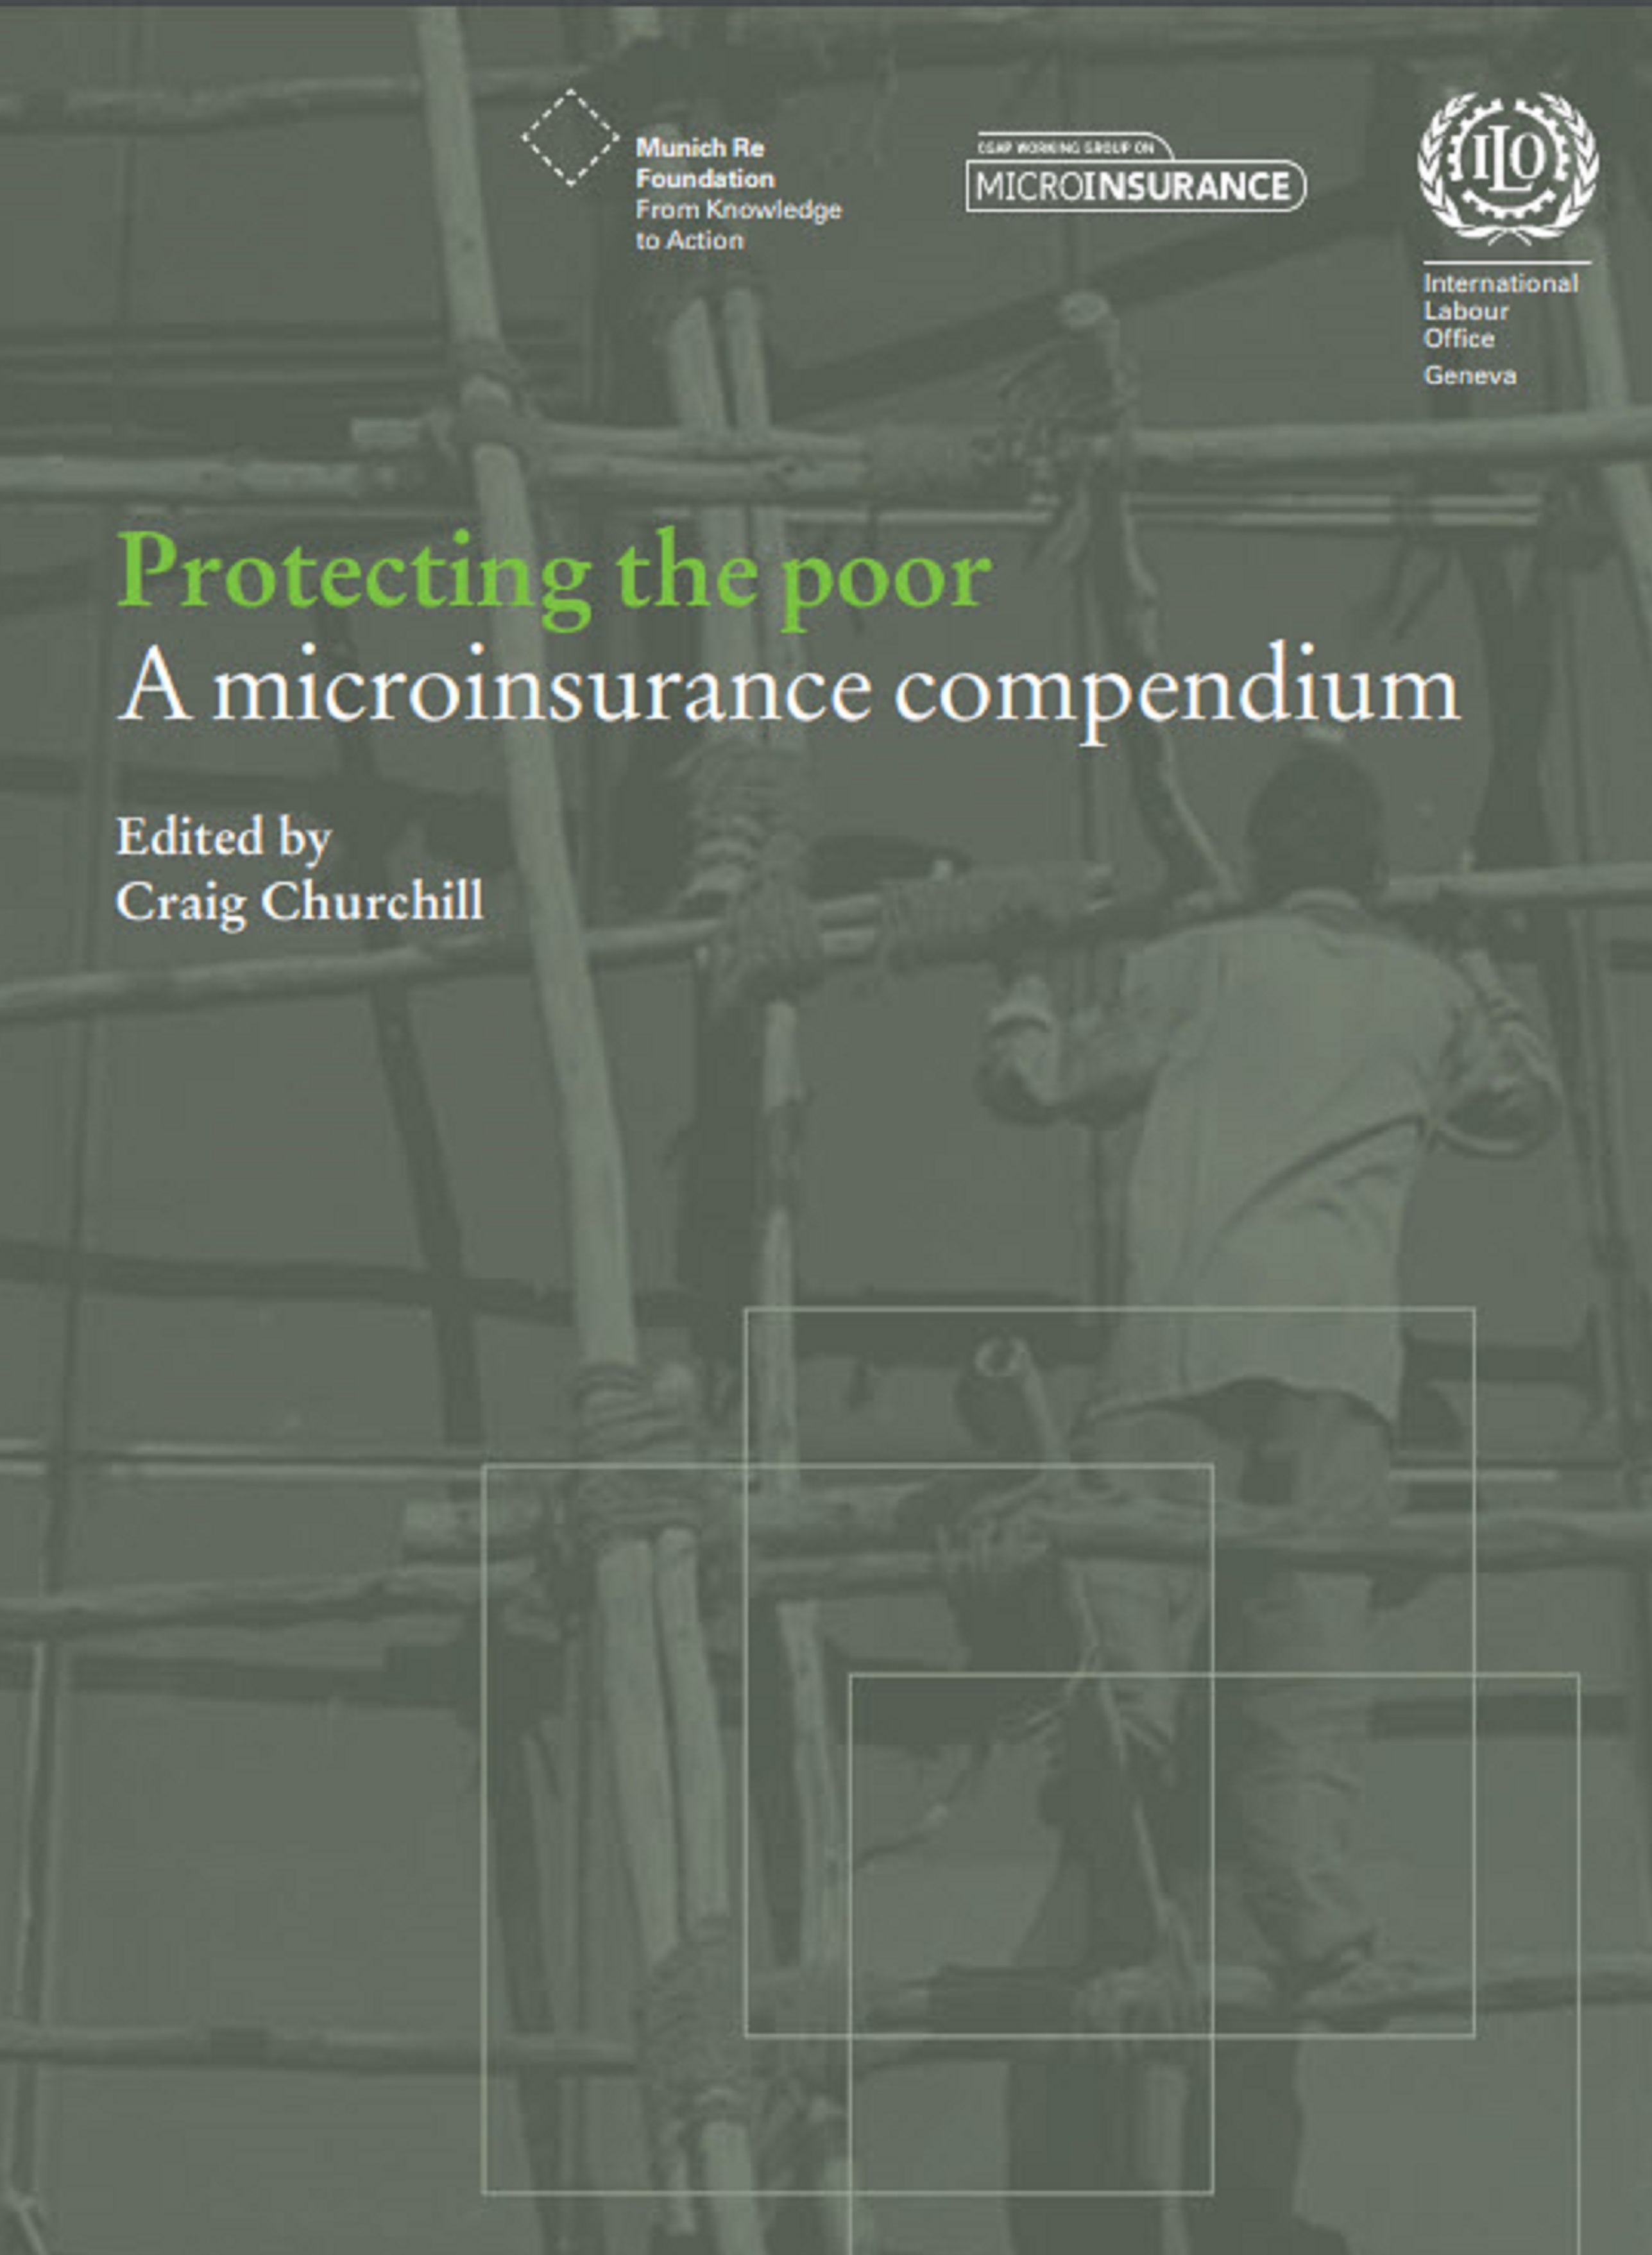 Microinsurance_compendium